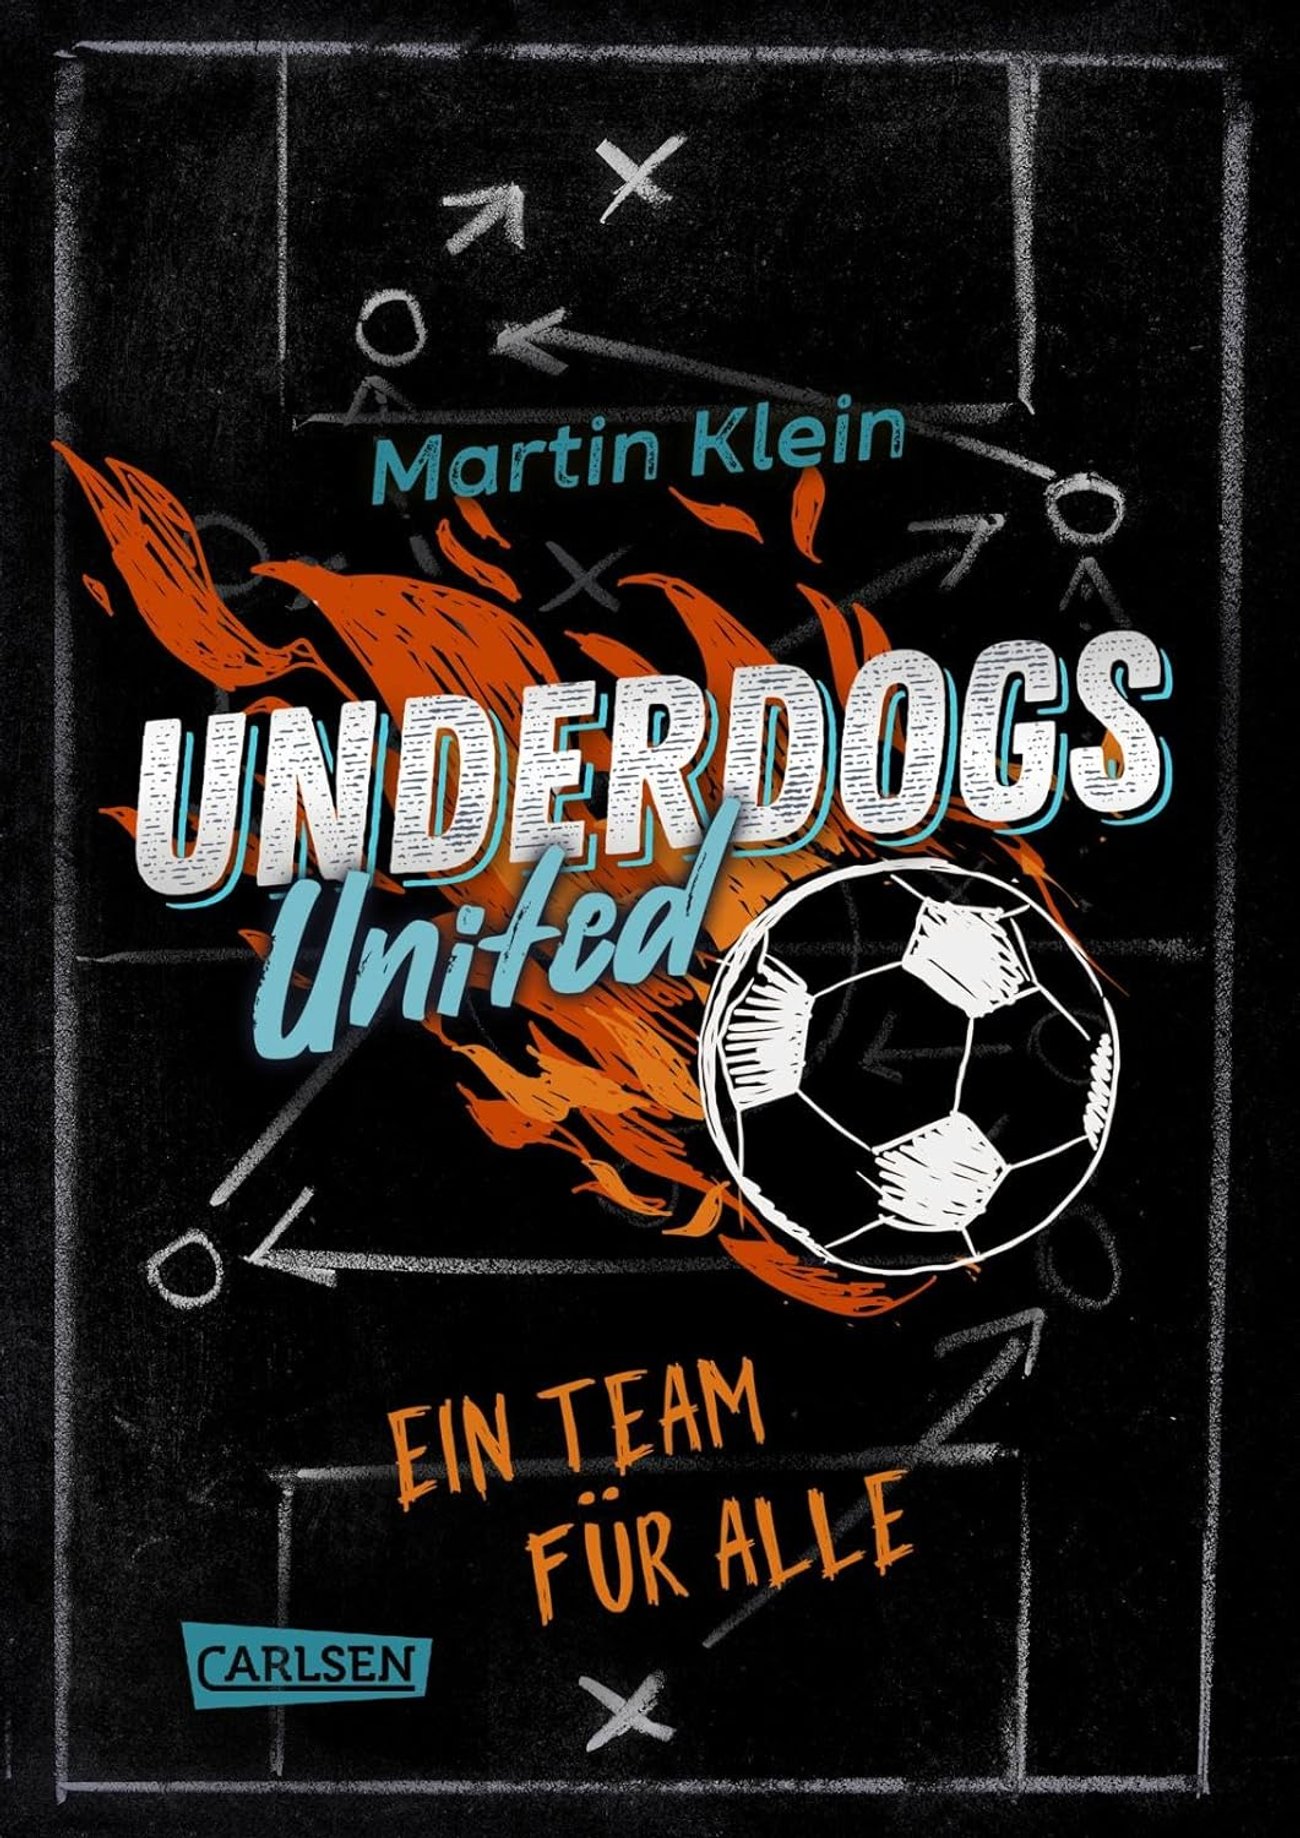 Underdogs United - Ein Team für alle: Mitreißende Fußballgeschichte für ALLE